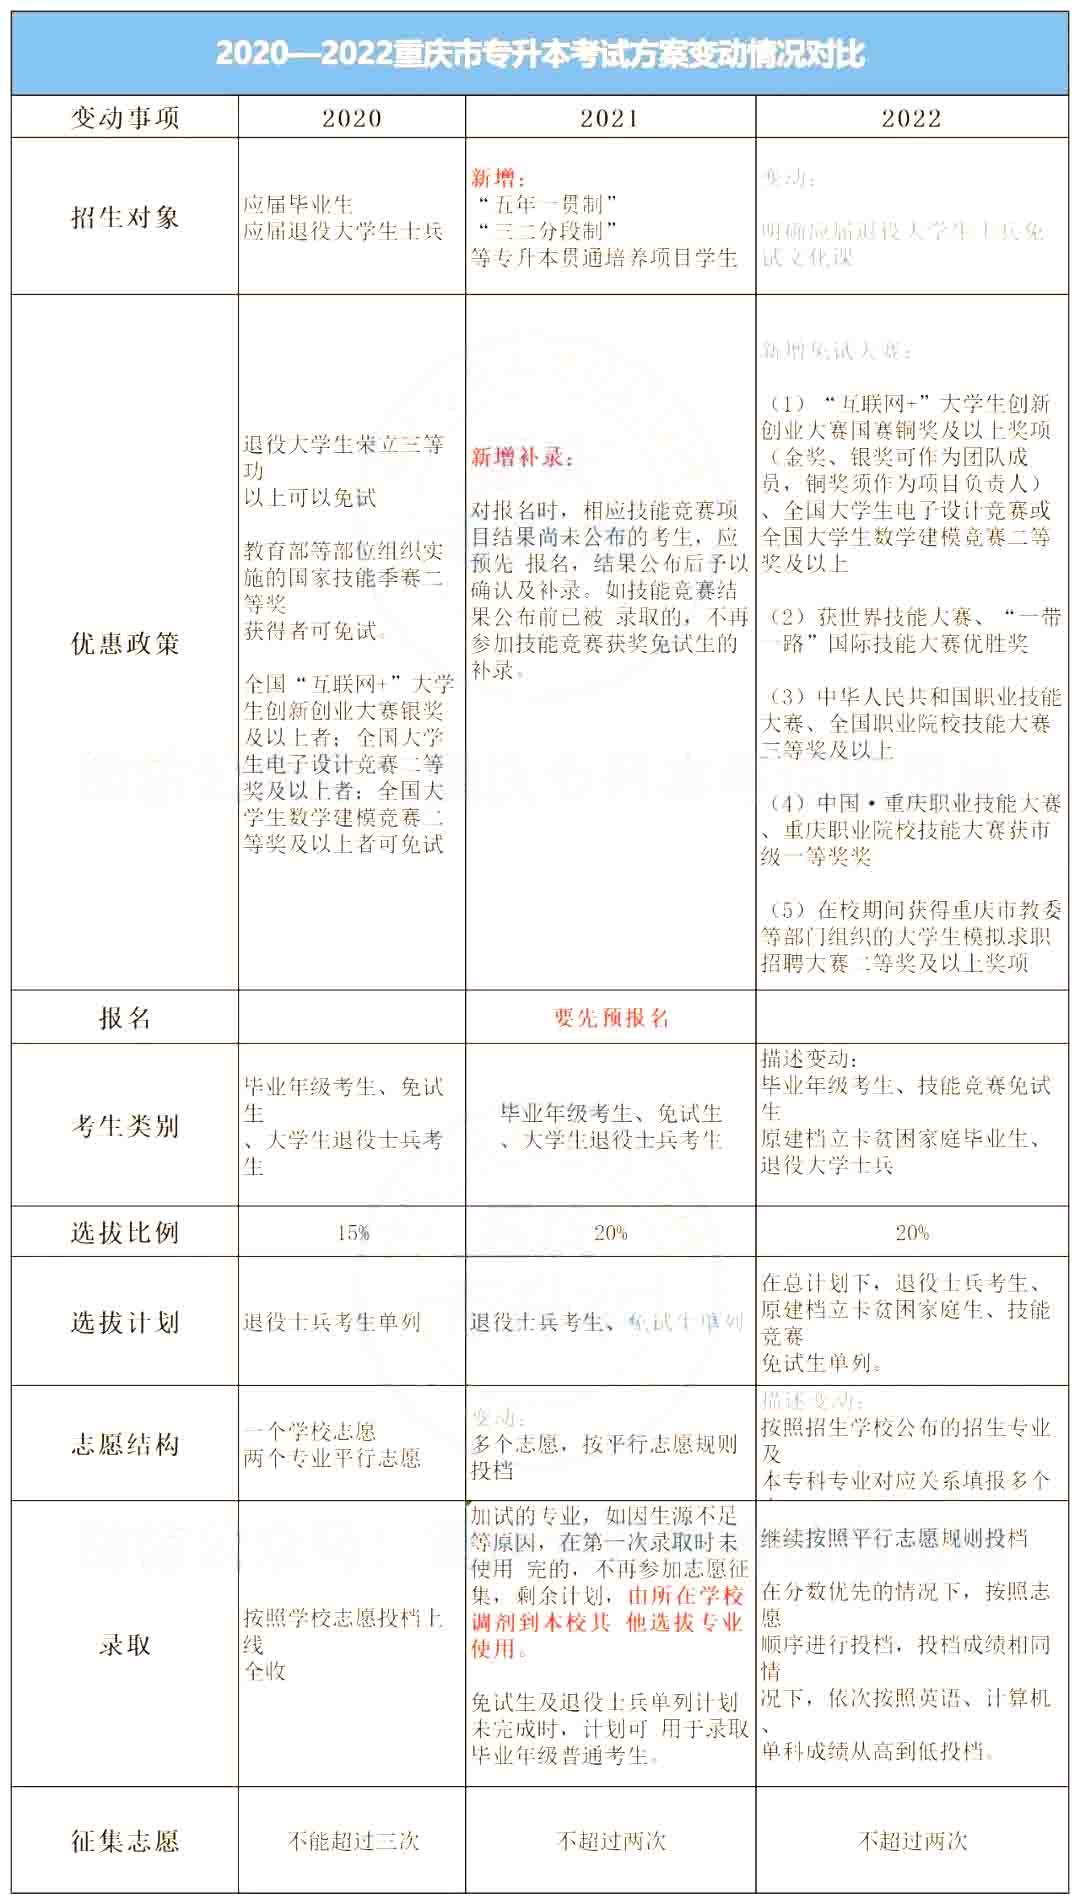 重庆专升本近三年考试政策变化